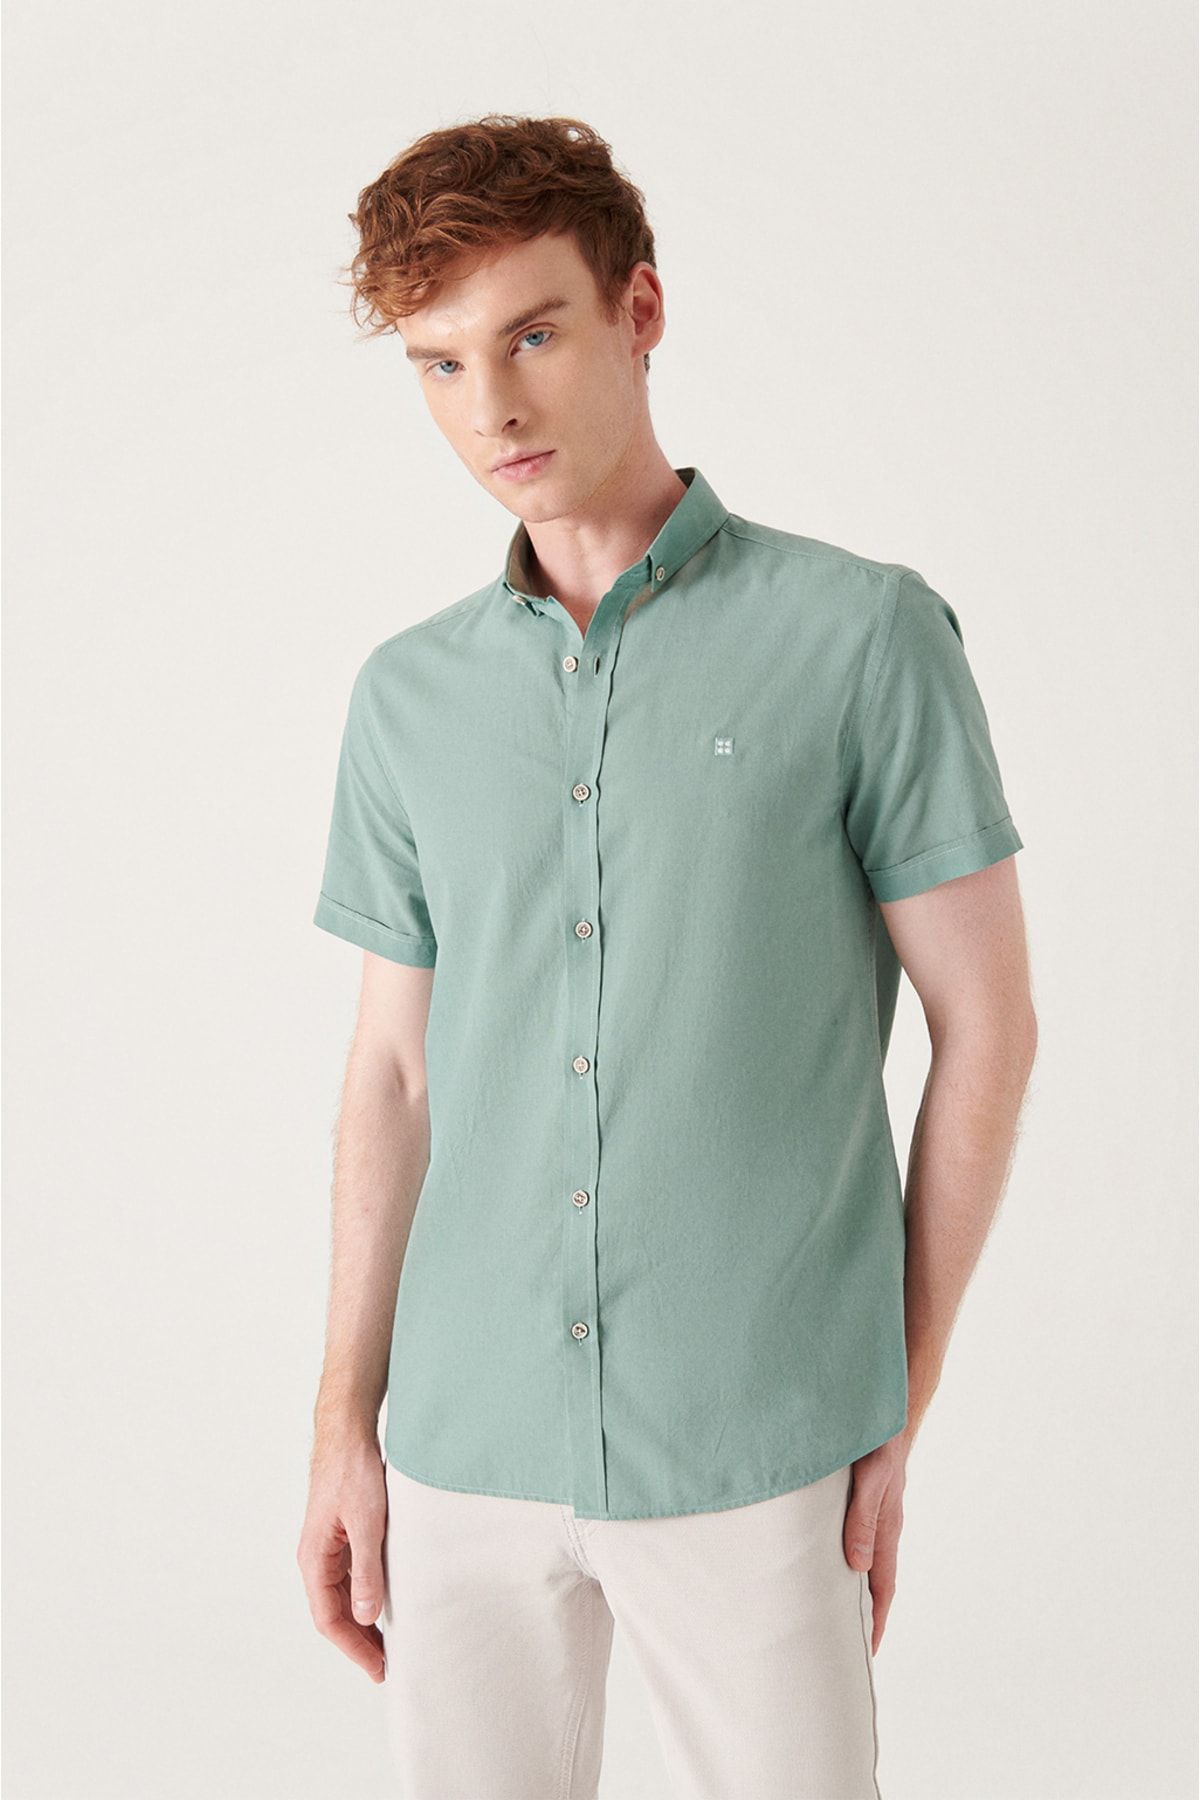 پیراهن آستین کوتاه مردانه مشکی 100% نخی نازک و یقه نرم با تناسب استاندارد آوا Avva (ساخت ترکیه)